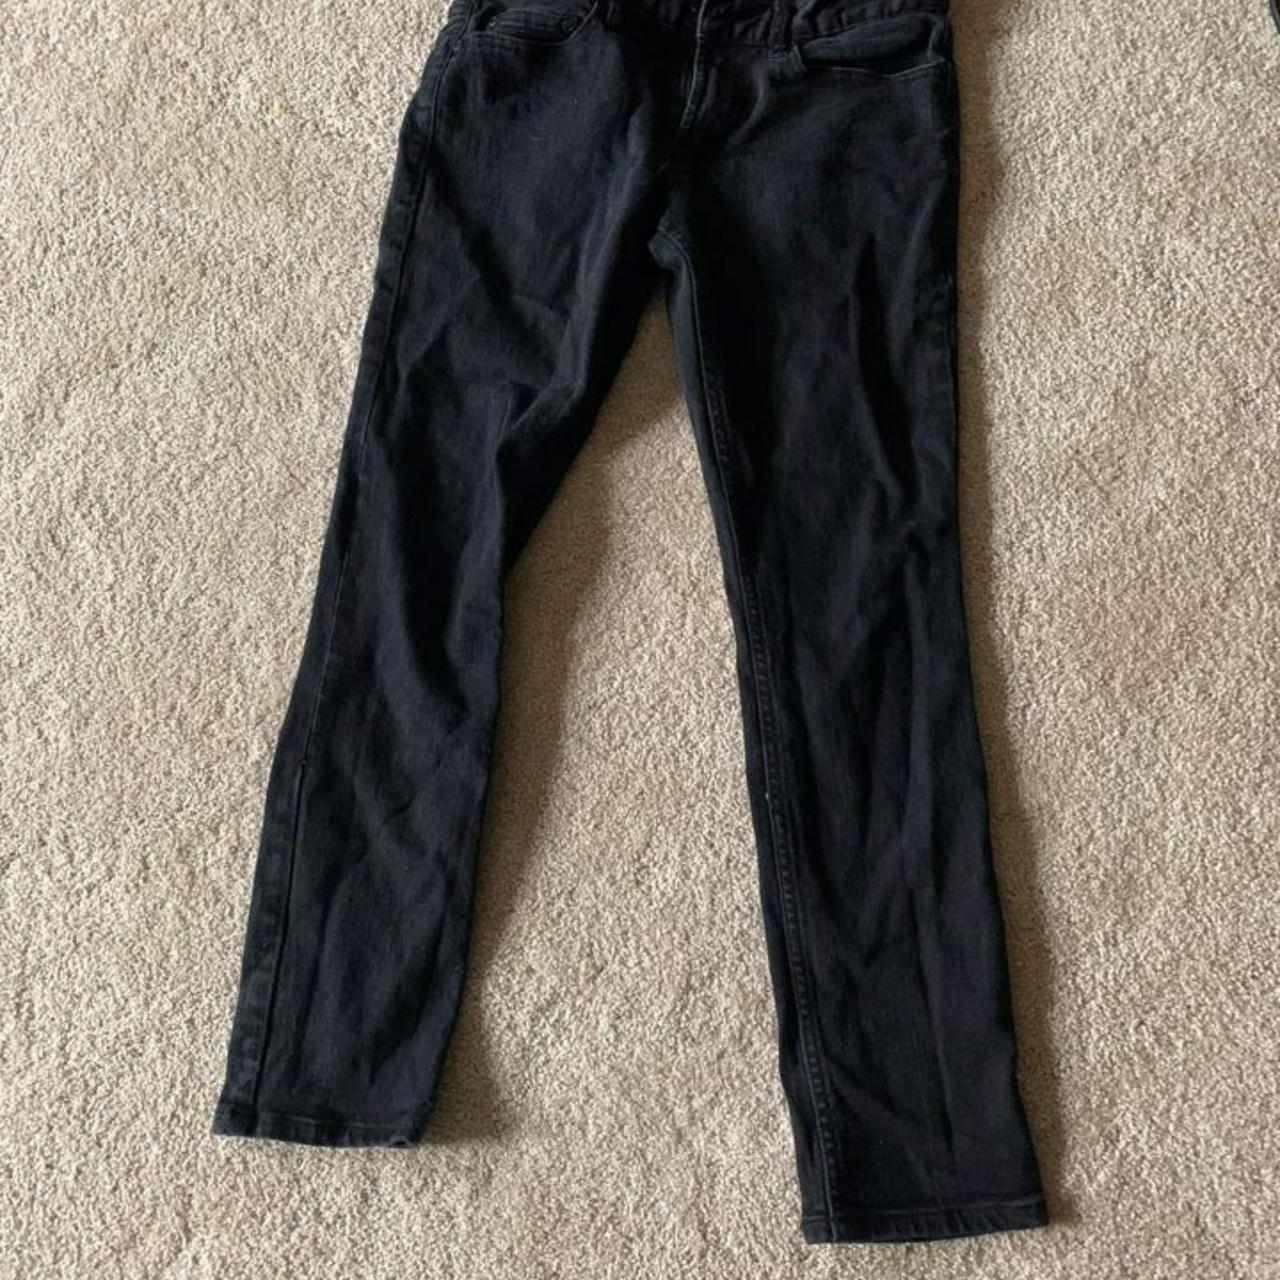 Black Skinny Jeans Worn black skinny jeans simply... - Depop